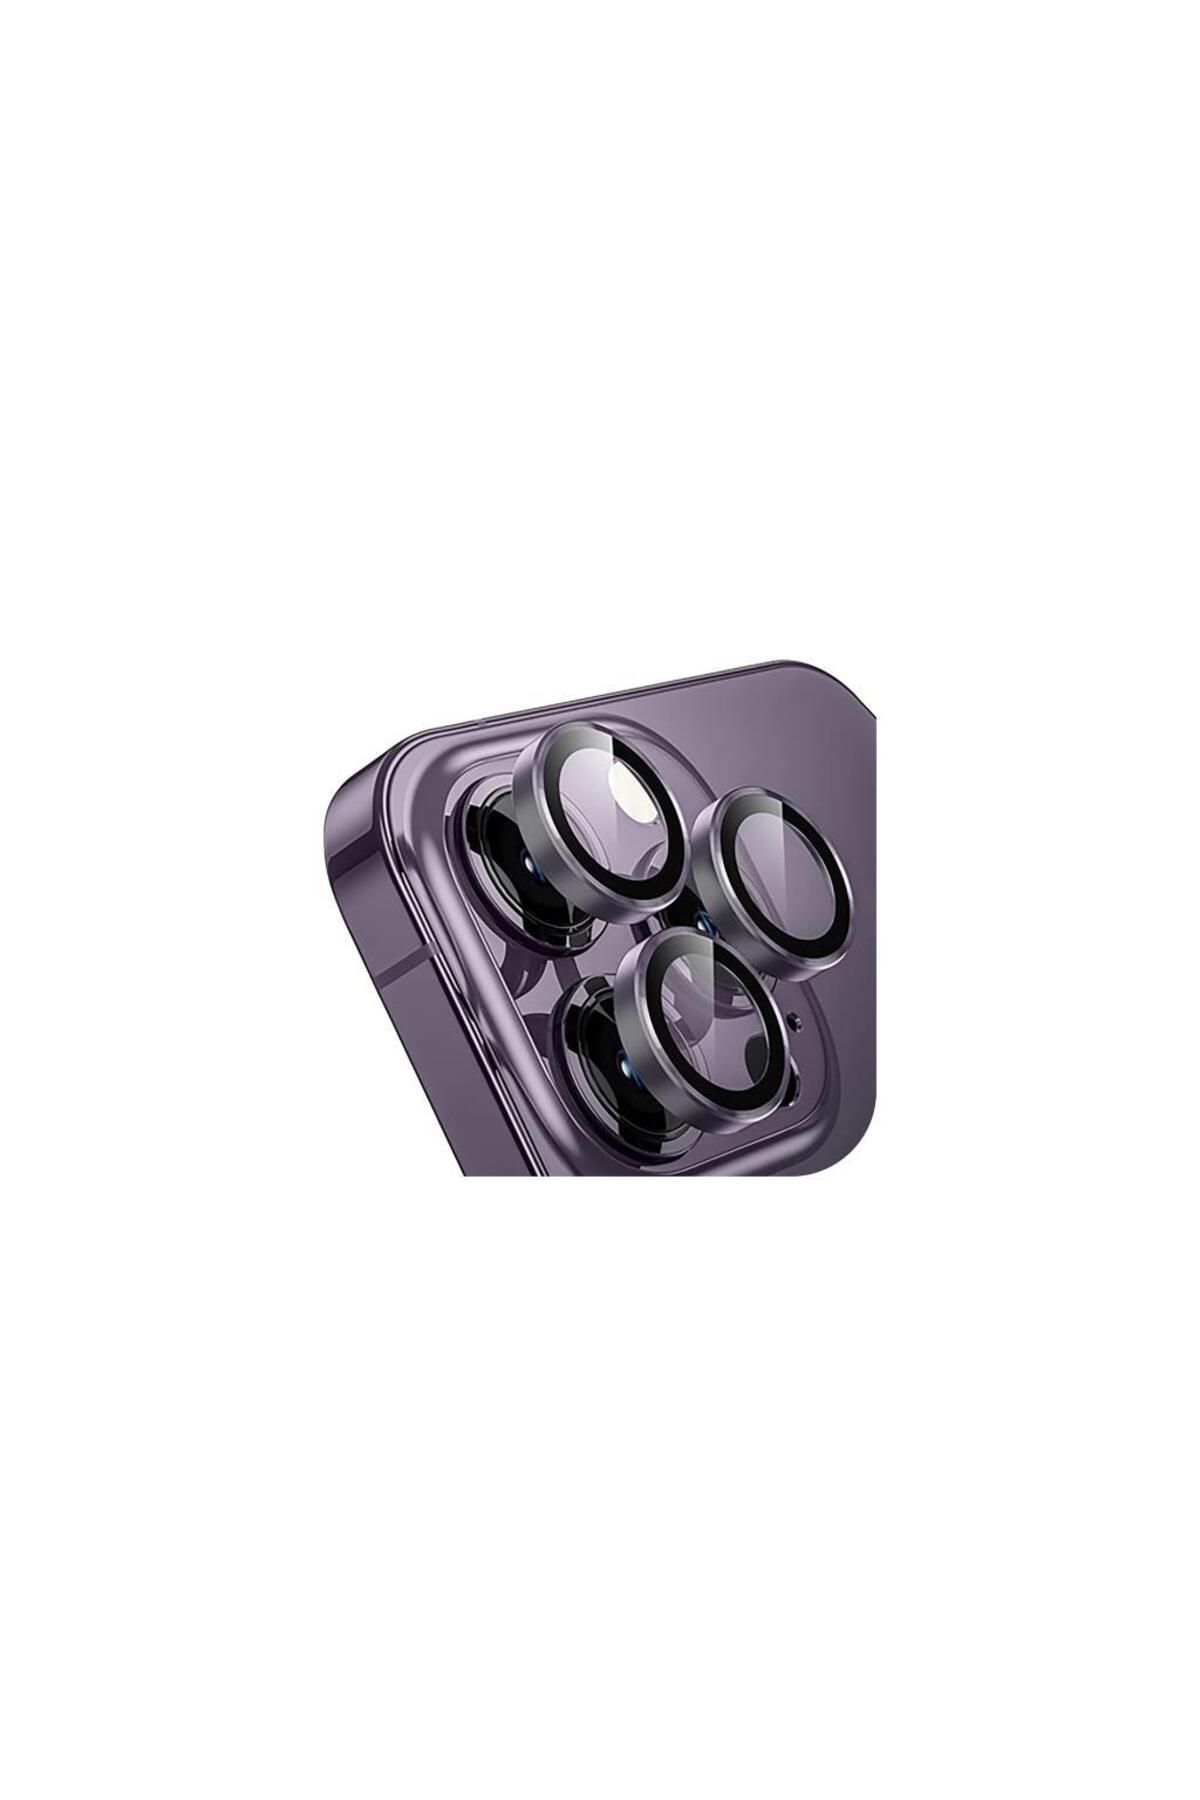 Sunix Iphone 14 Pro / 14 Pro Max Ile Uyumlu Darbeye Dayanıklı Safir Kamera Lens Koruyucu Mor